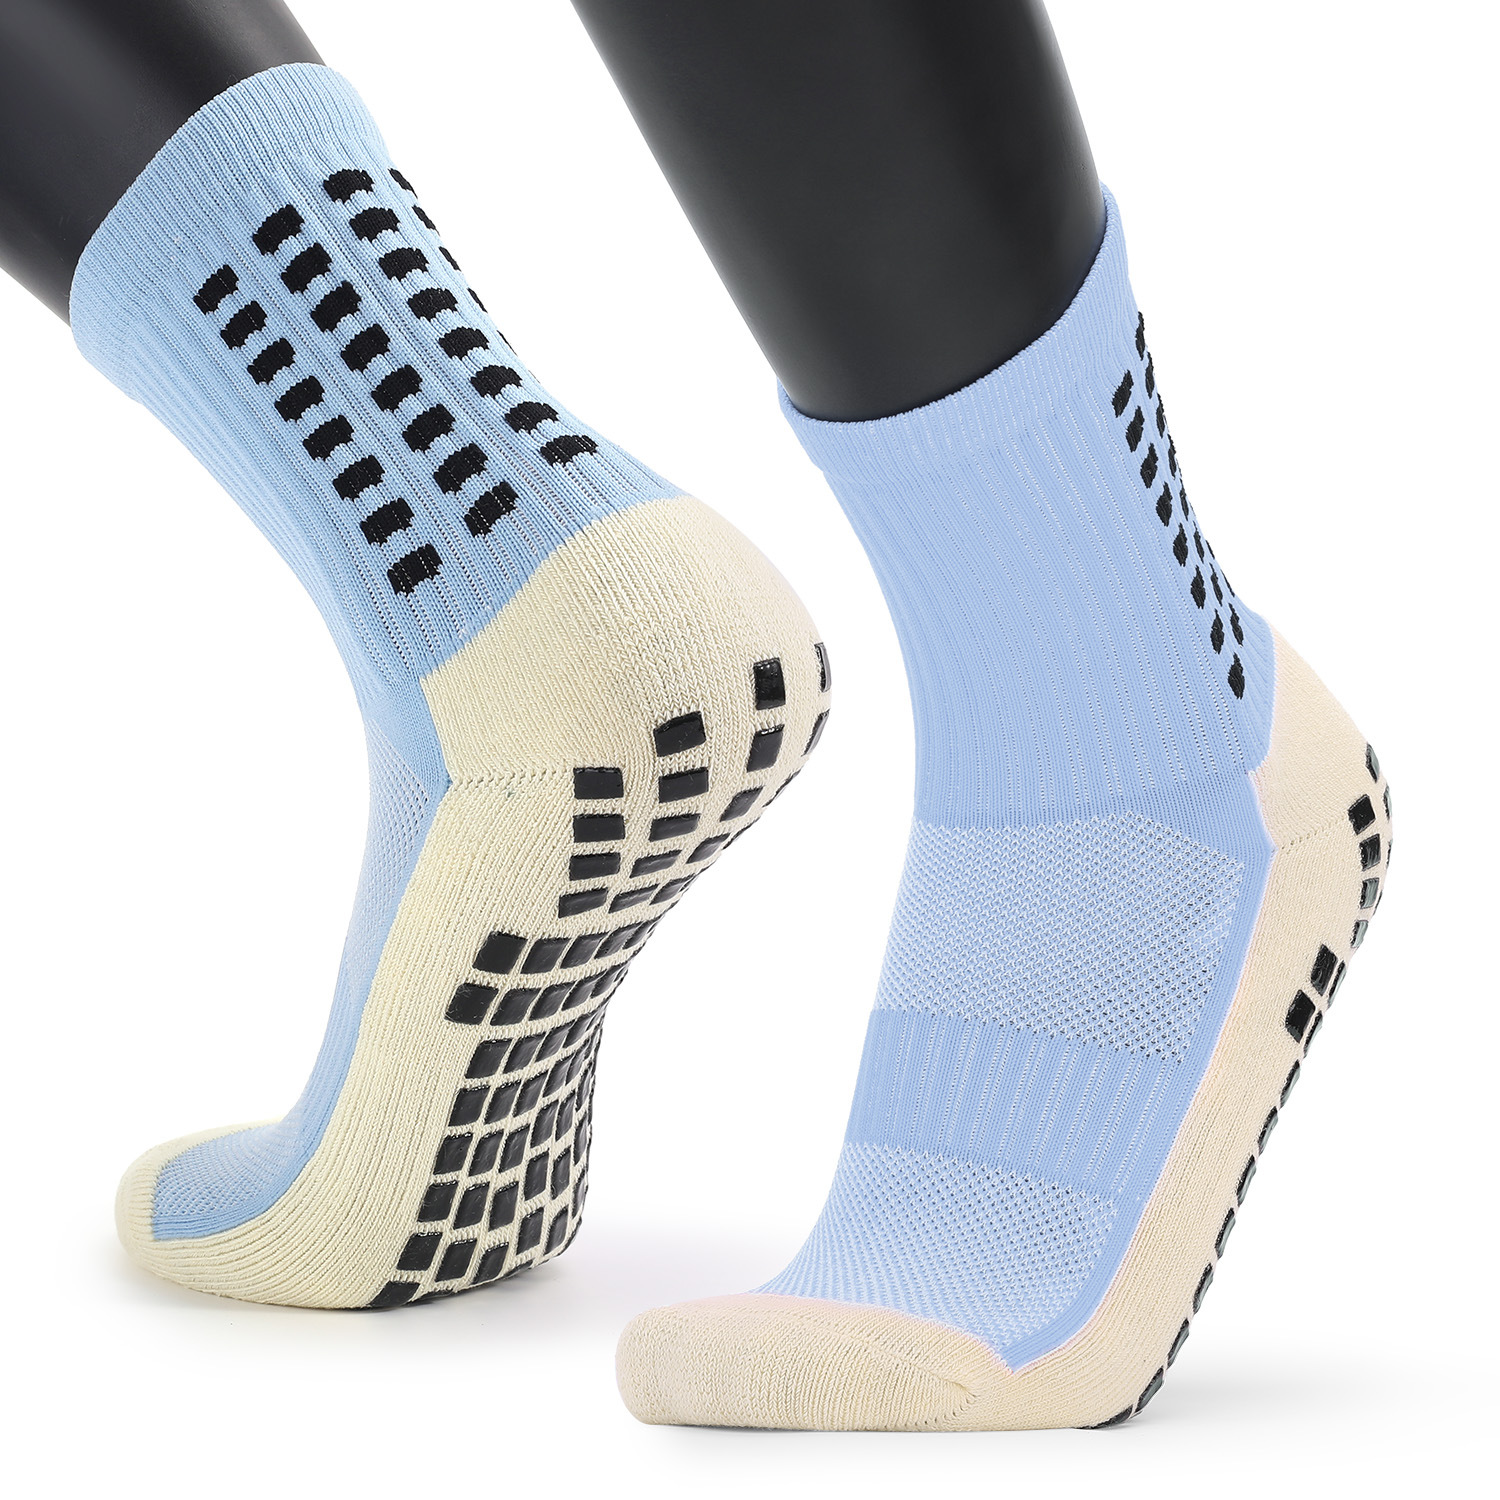 Womens Crew Socks Non Slid New Sports Mid Socks 